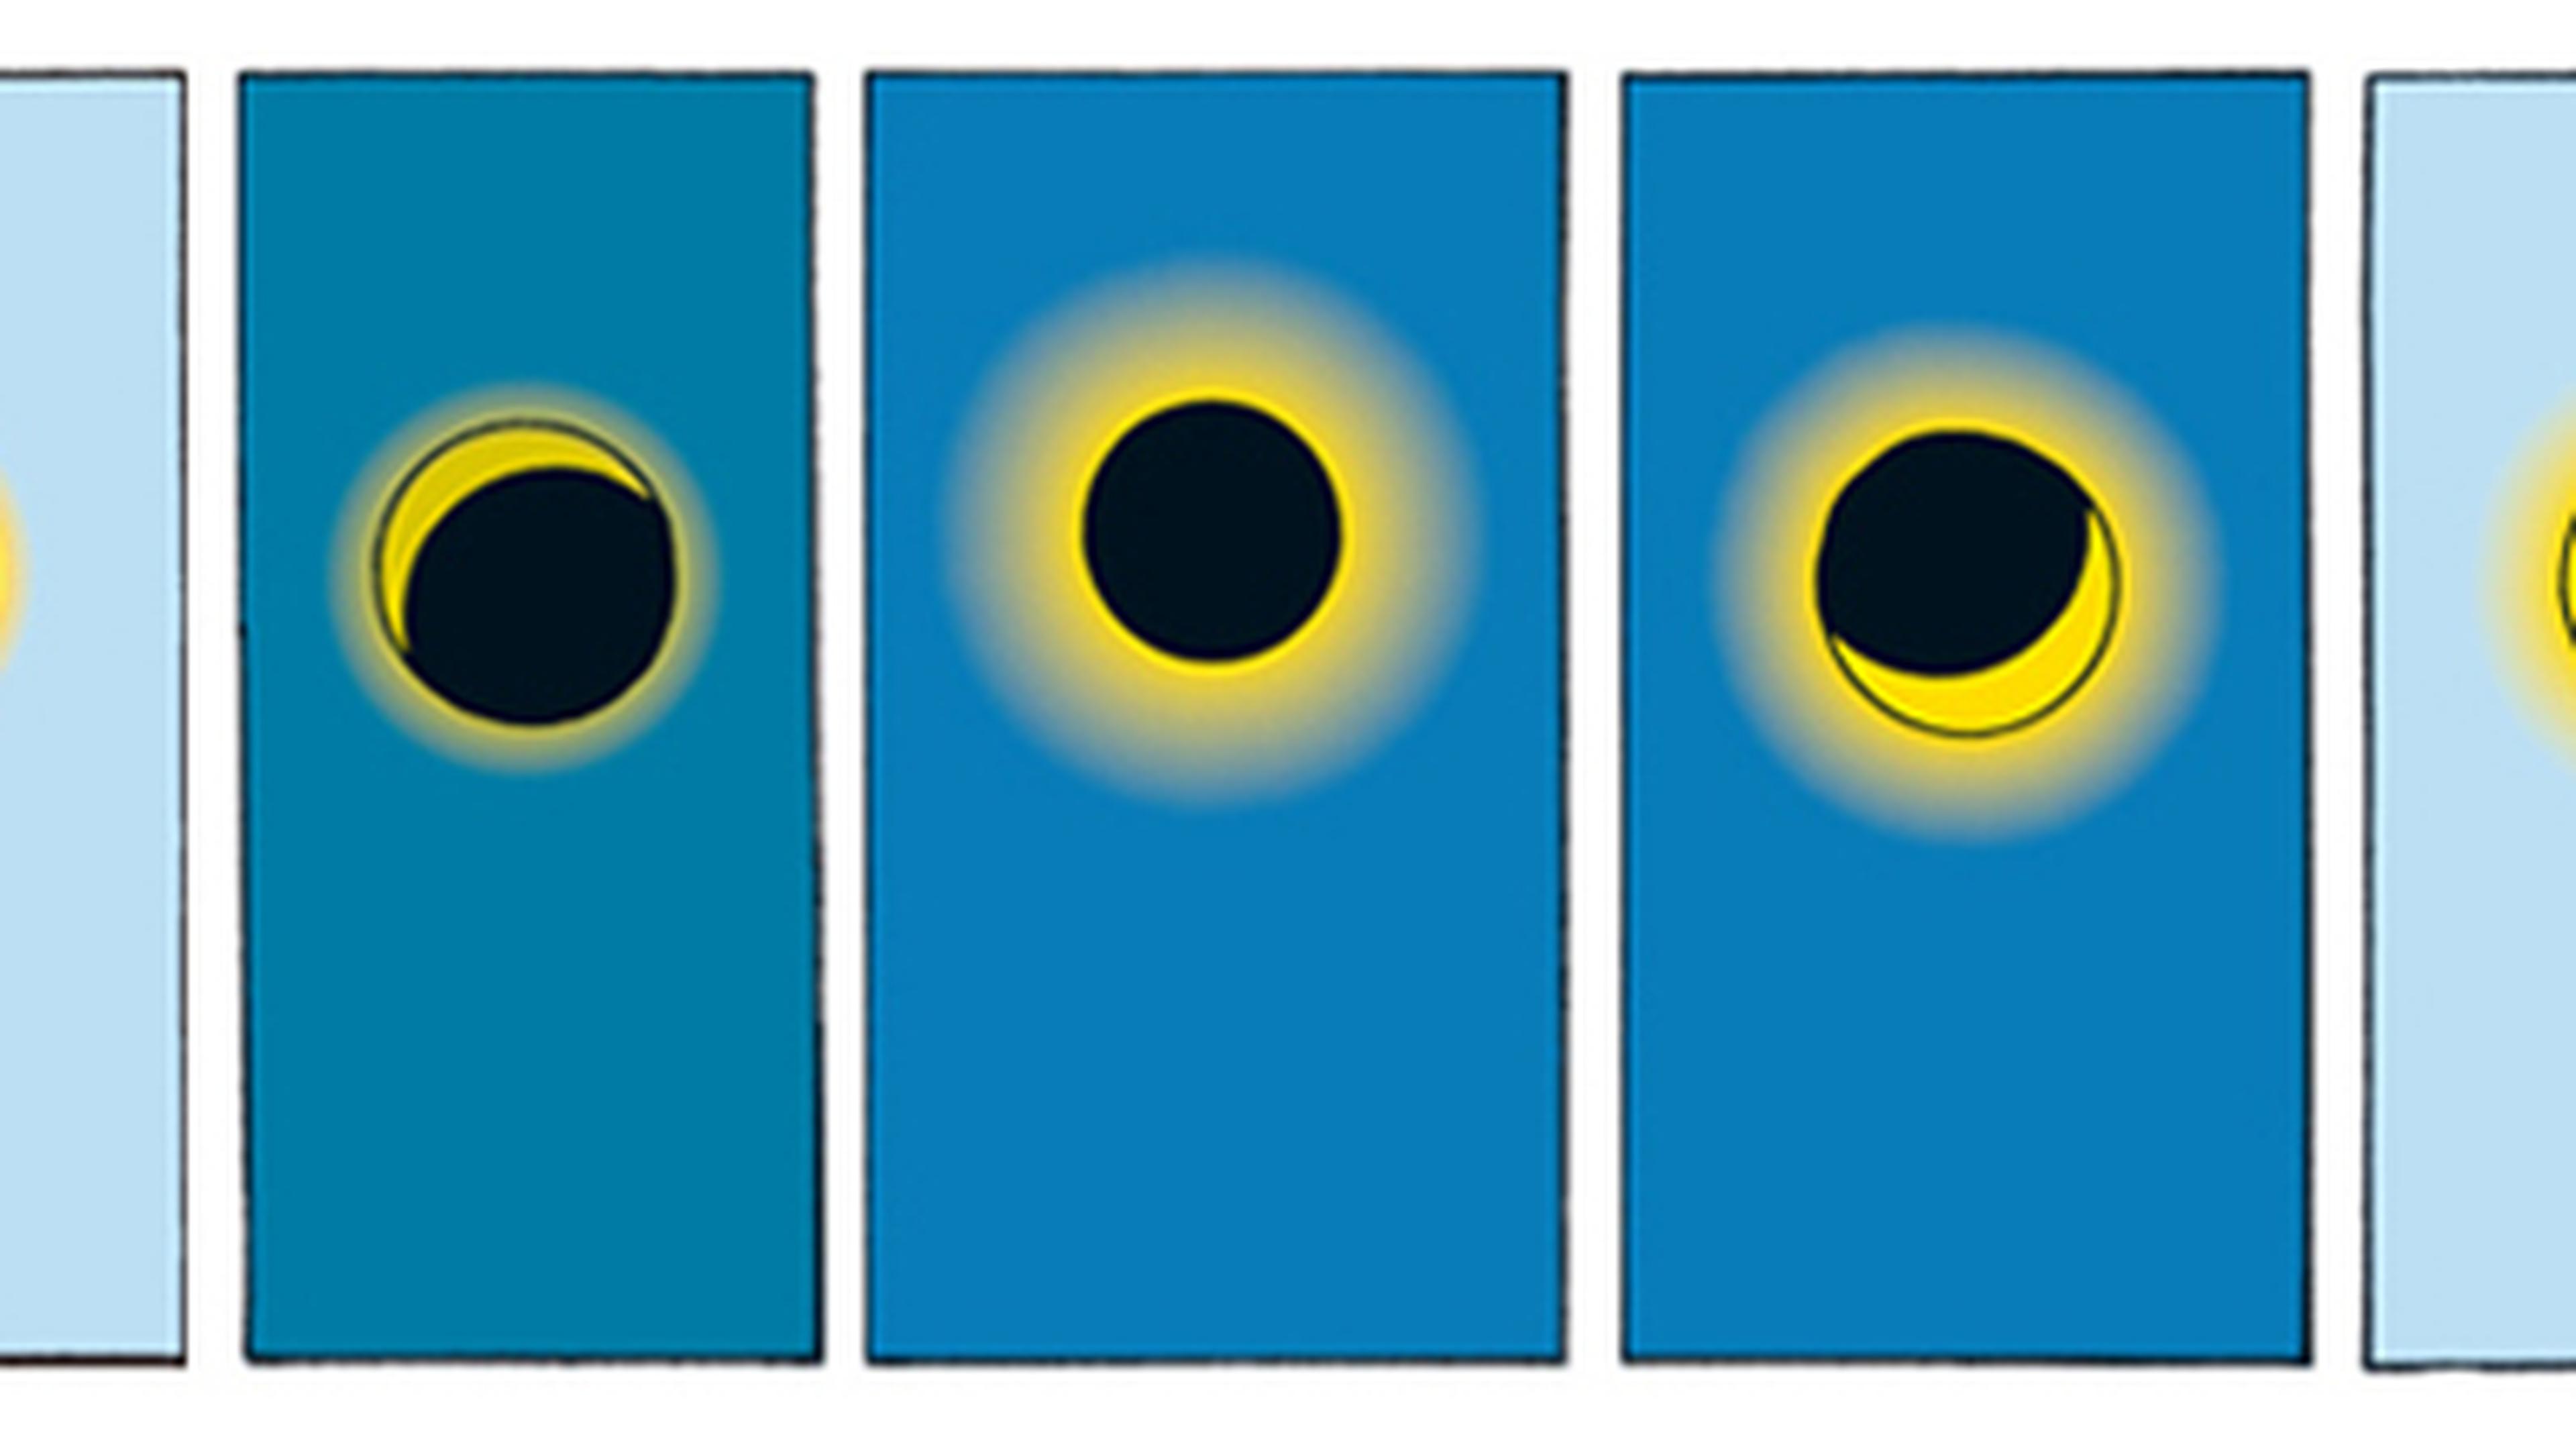 Auch bei der Darstellung der Sonnenfinsternis ist Hergé ein Fehler unterlaufen. Die Sonnenfinsternis verläuft bei Hergé von rechts nach links, da aber Peru auf der Südhalbkugel der Erde liegt, müsste der Ablauf von links nach rechts sein.